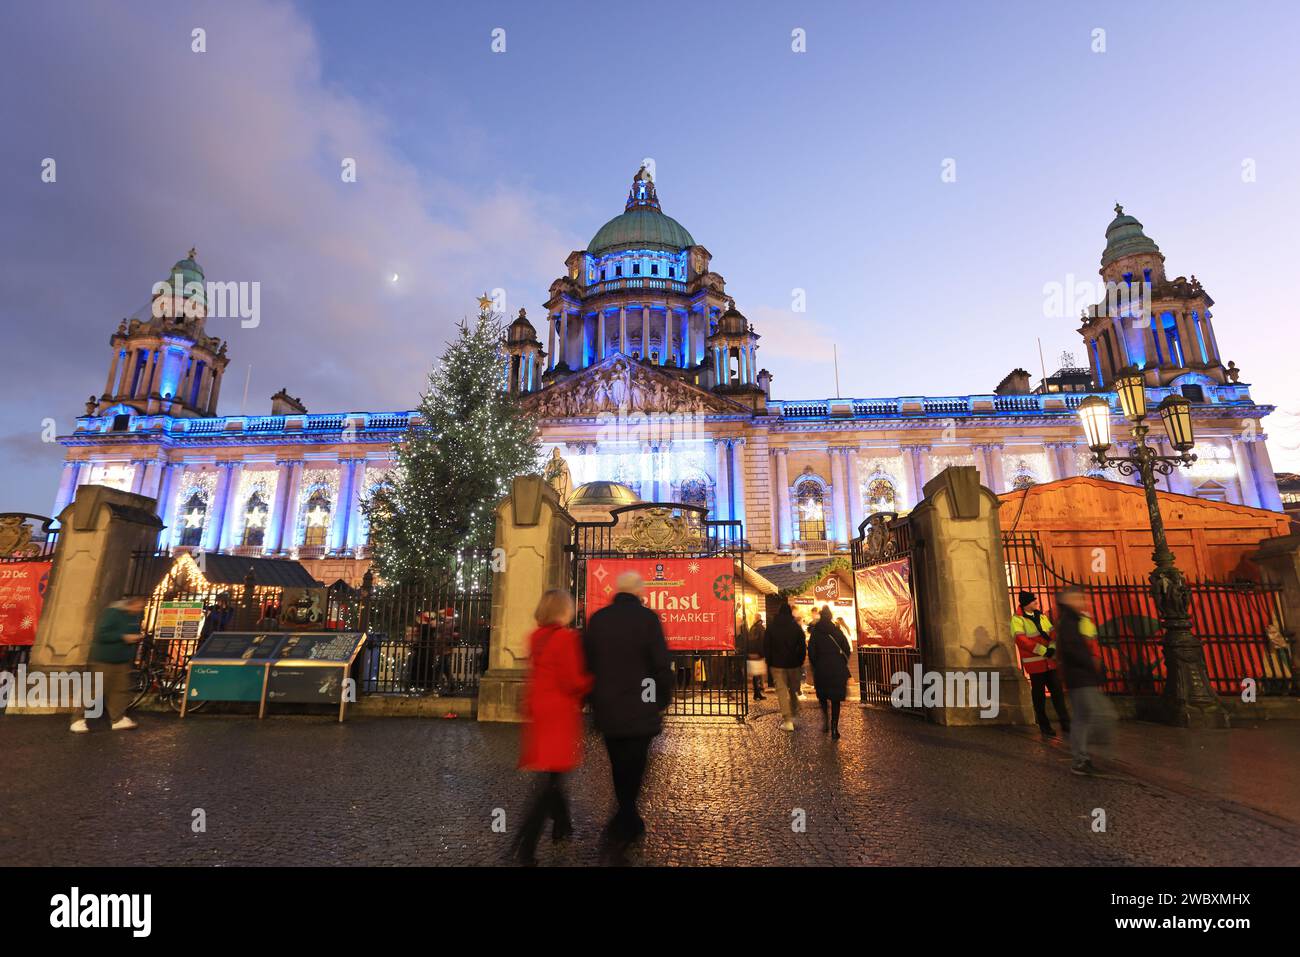 Beliebter Weihnachtsmarkt vor dem historischen Rathaus, dem Bürgerhaus des Stadtrates von Belfast, am Donegall Square, in NI, Großbritannien Stockfoto